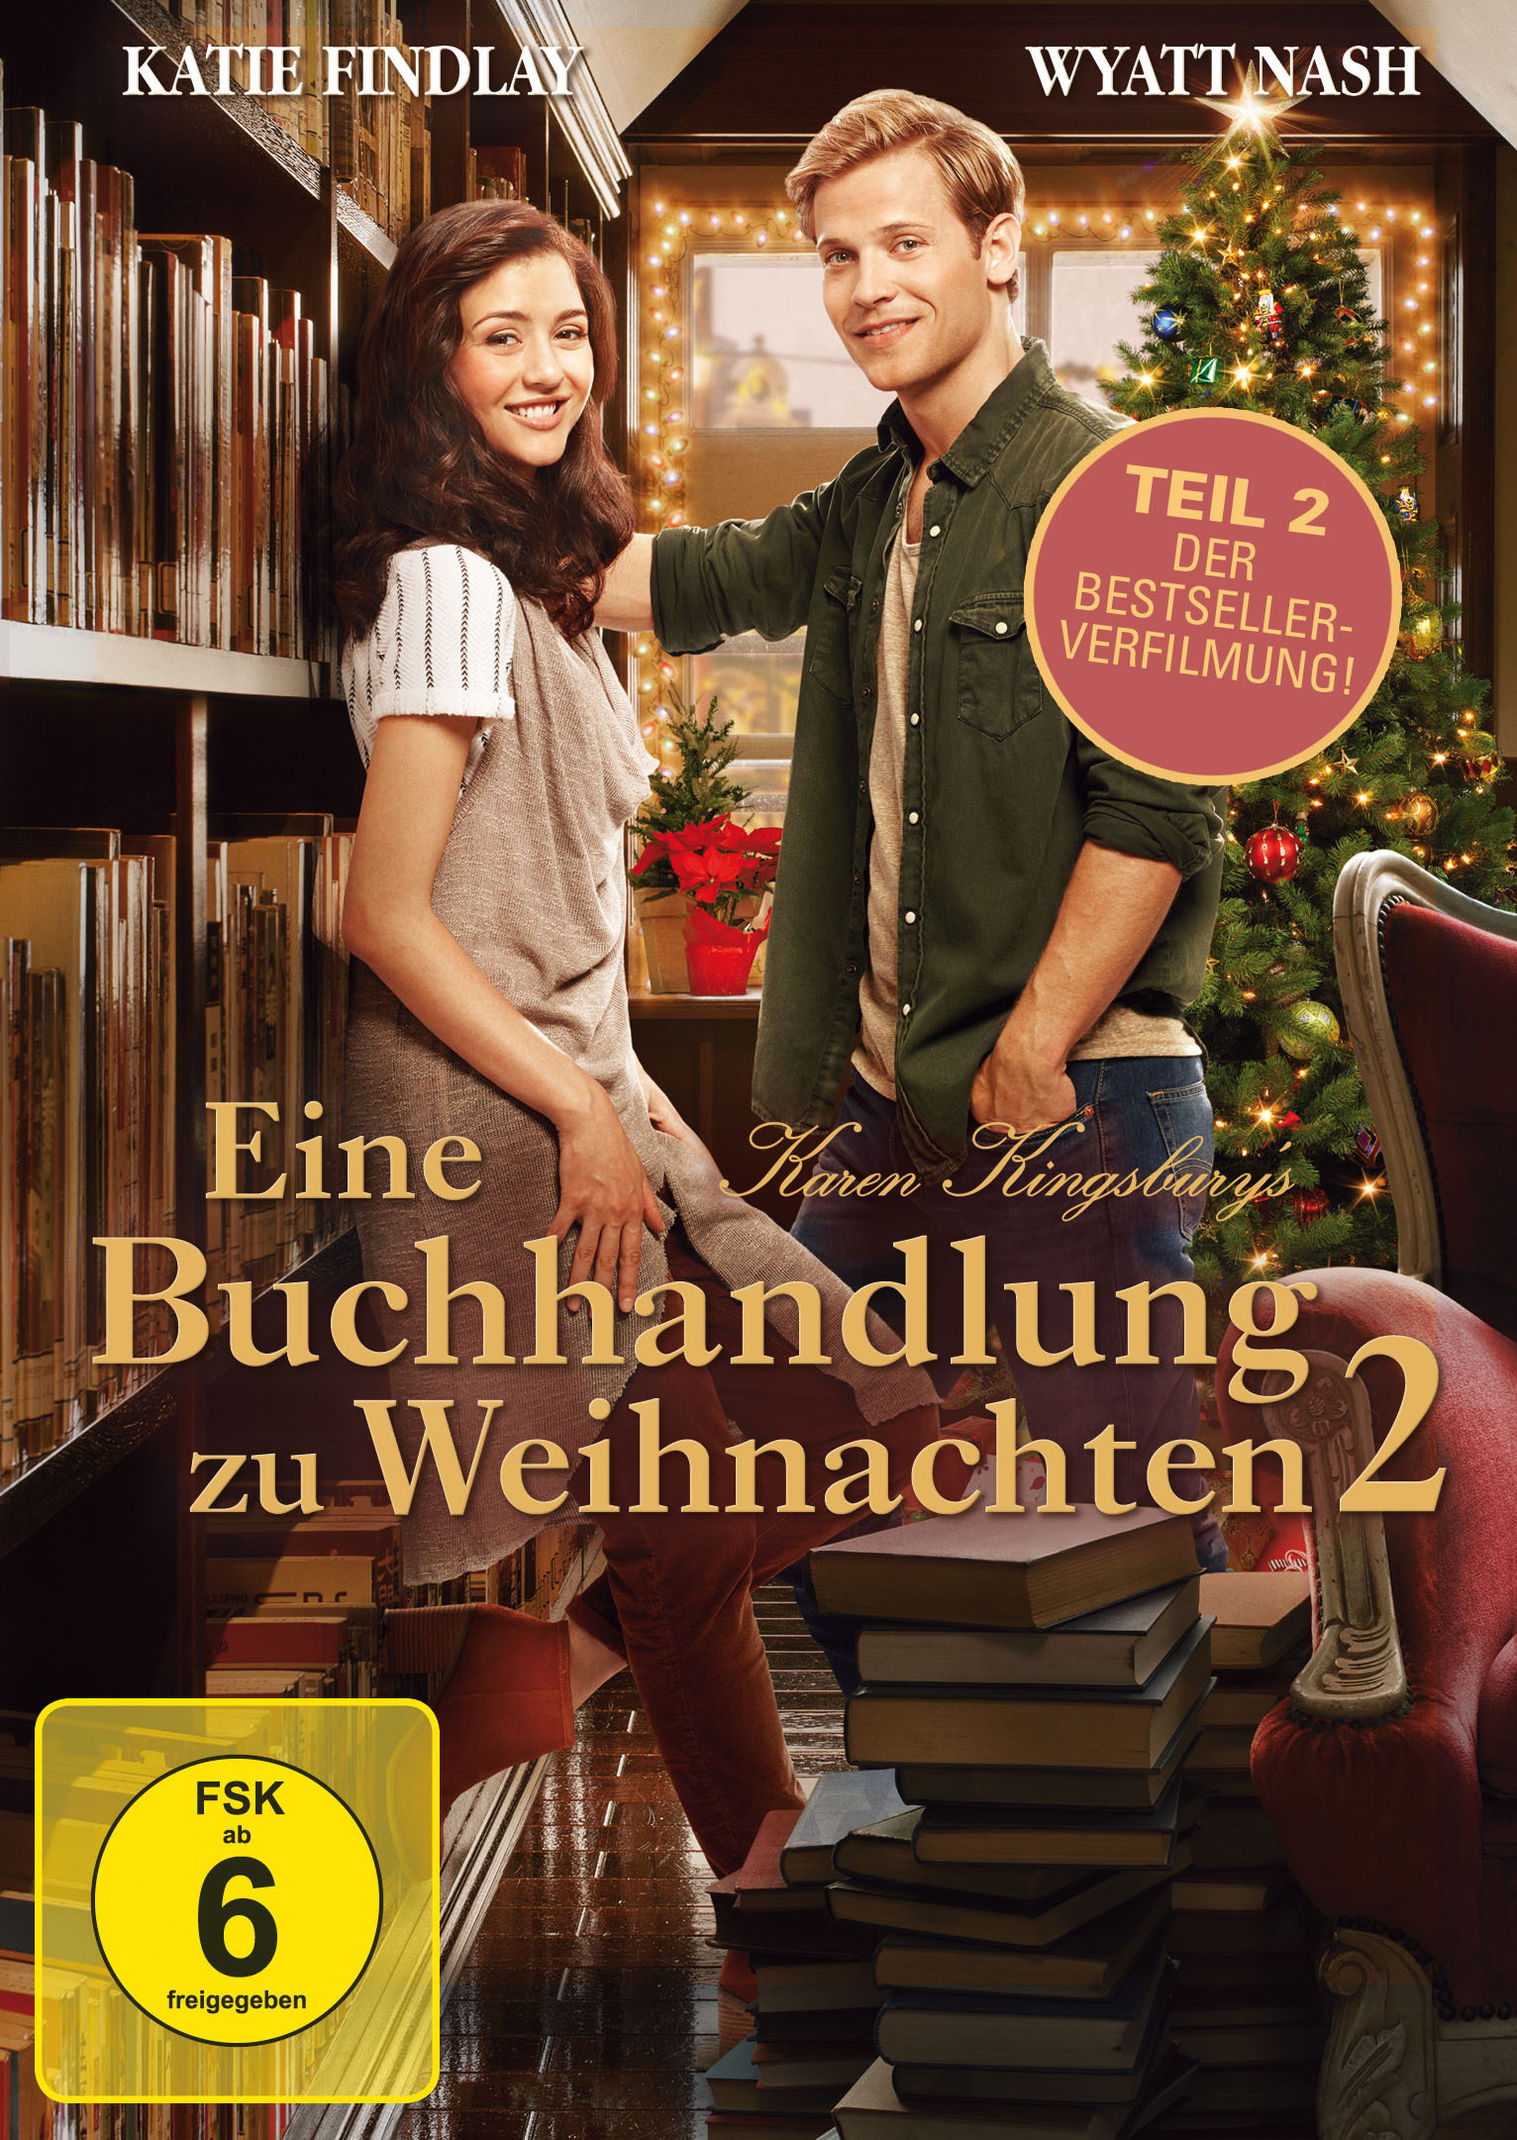 Karen Kingsbury: Eine Buchhandlung zu Weihnachten, Teil 2 Film | Weltbild.at